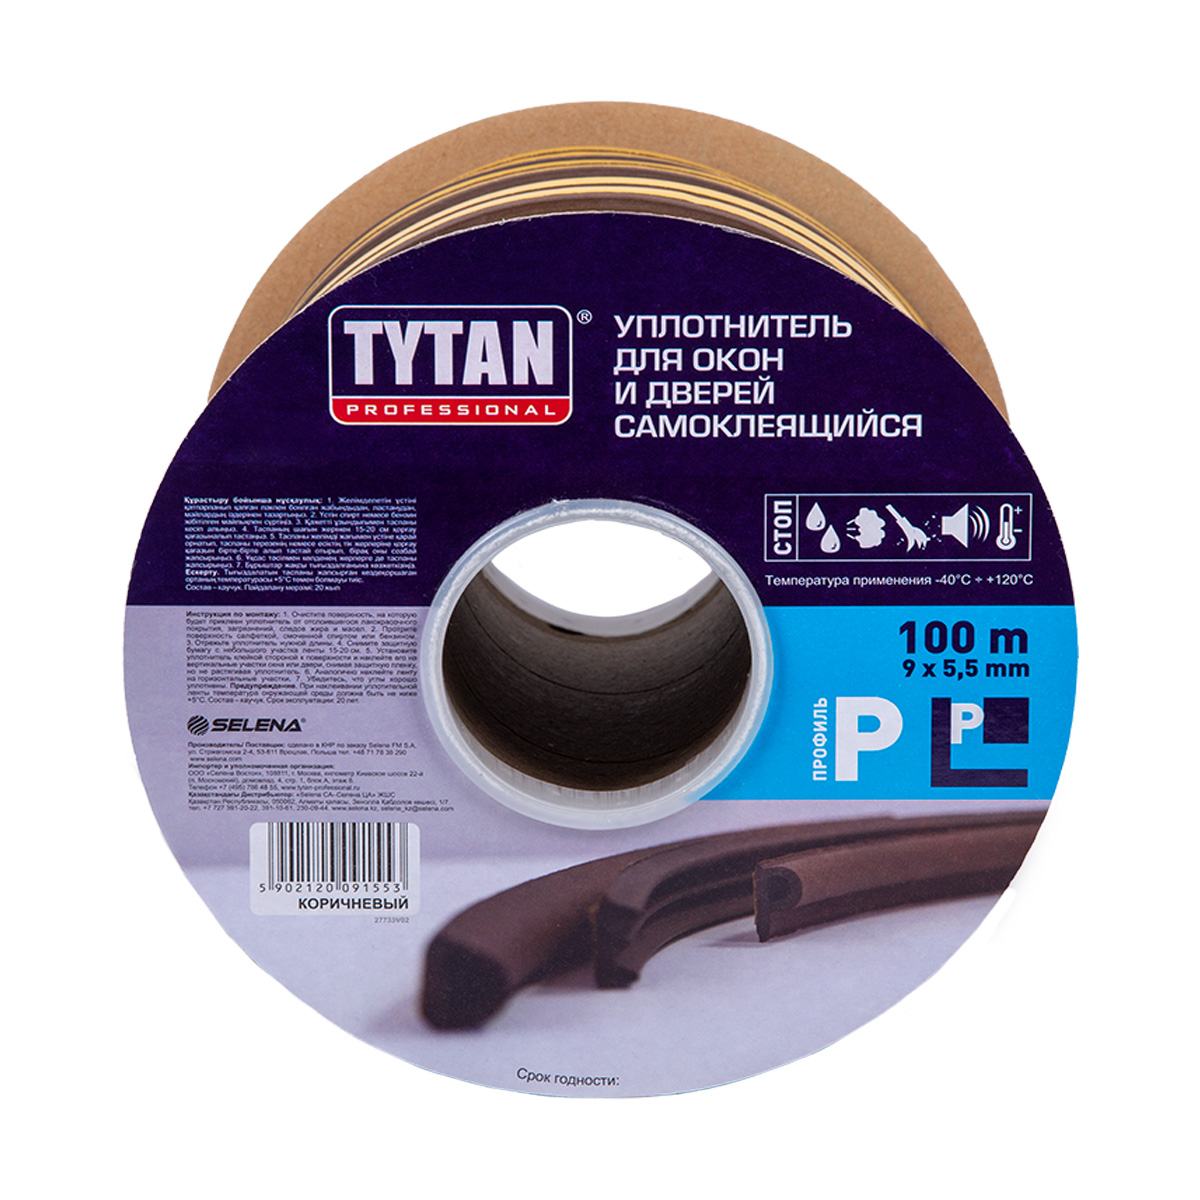 Уплотнитель Tytan Professional, P-профиль 9 x 5,5 мм, бухта 100 м, коричневый